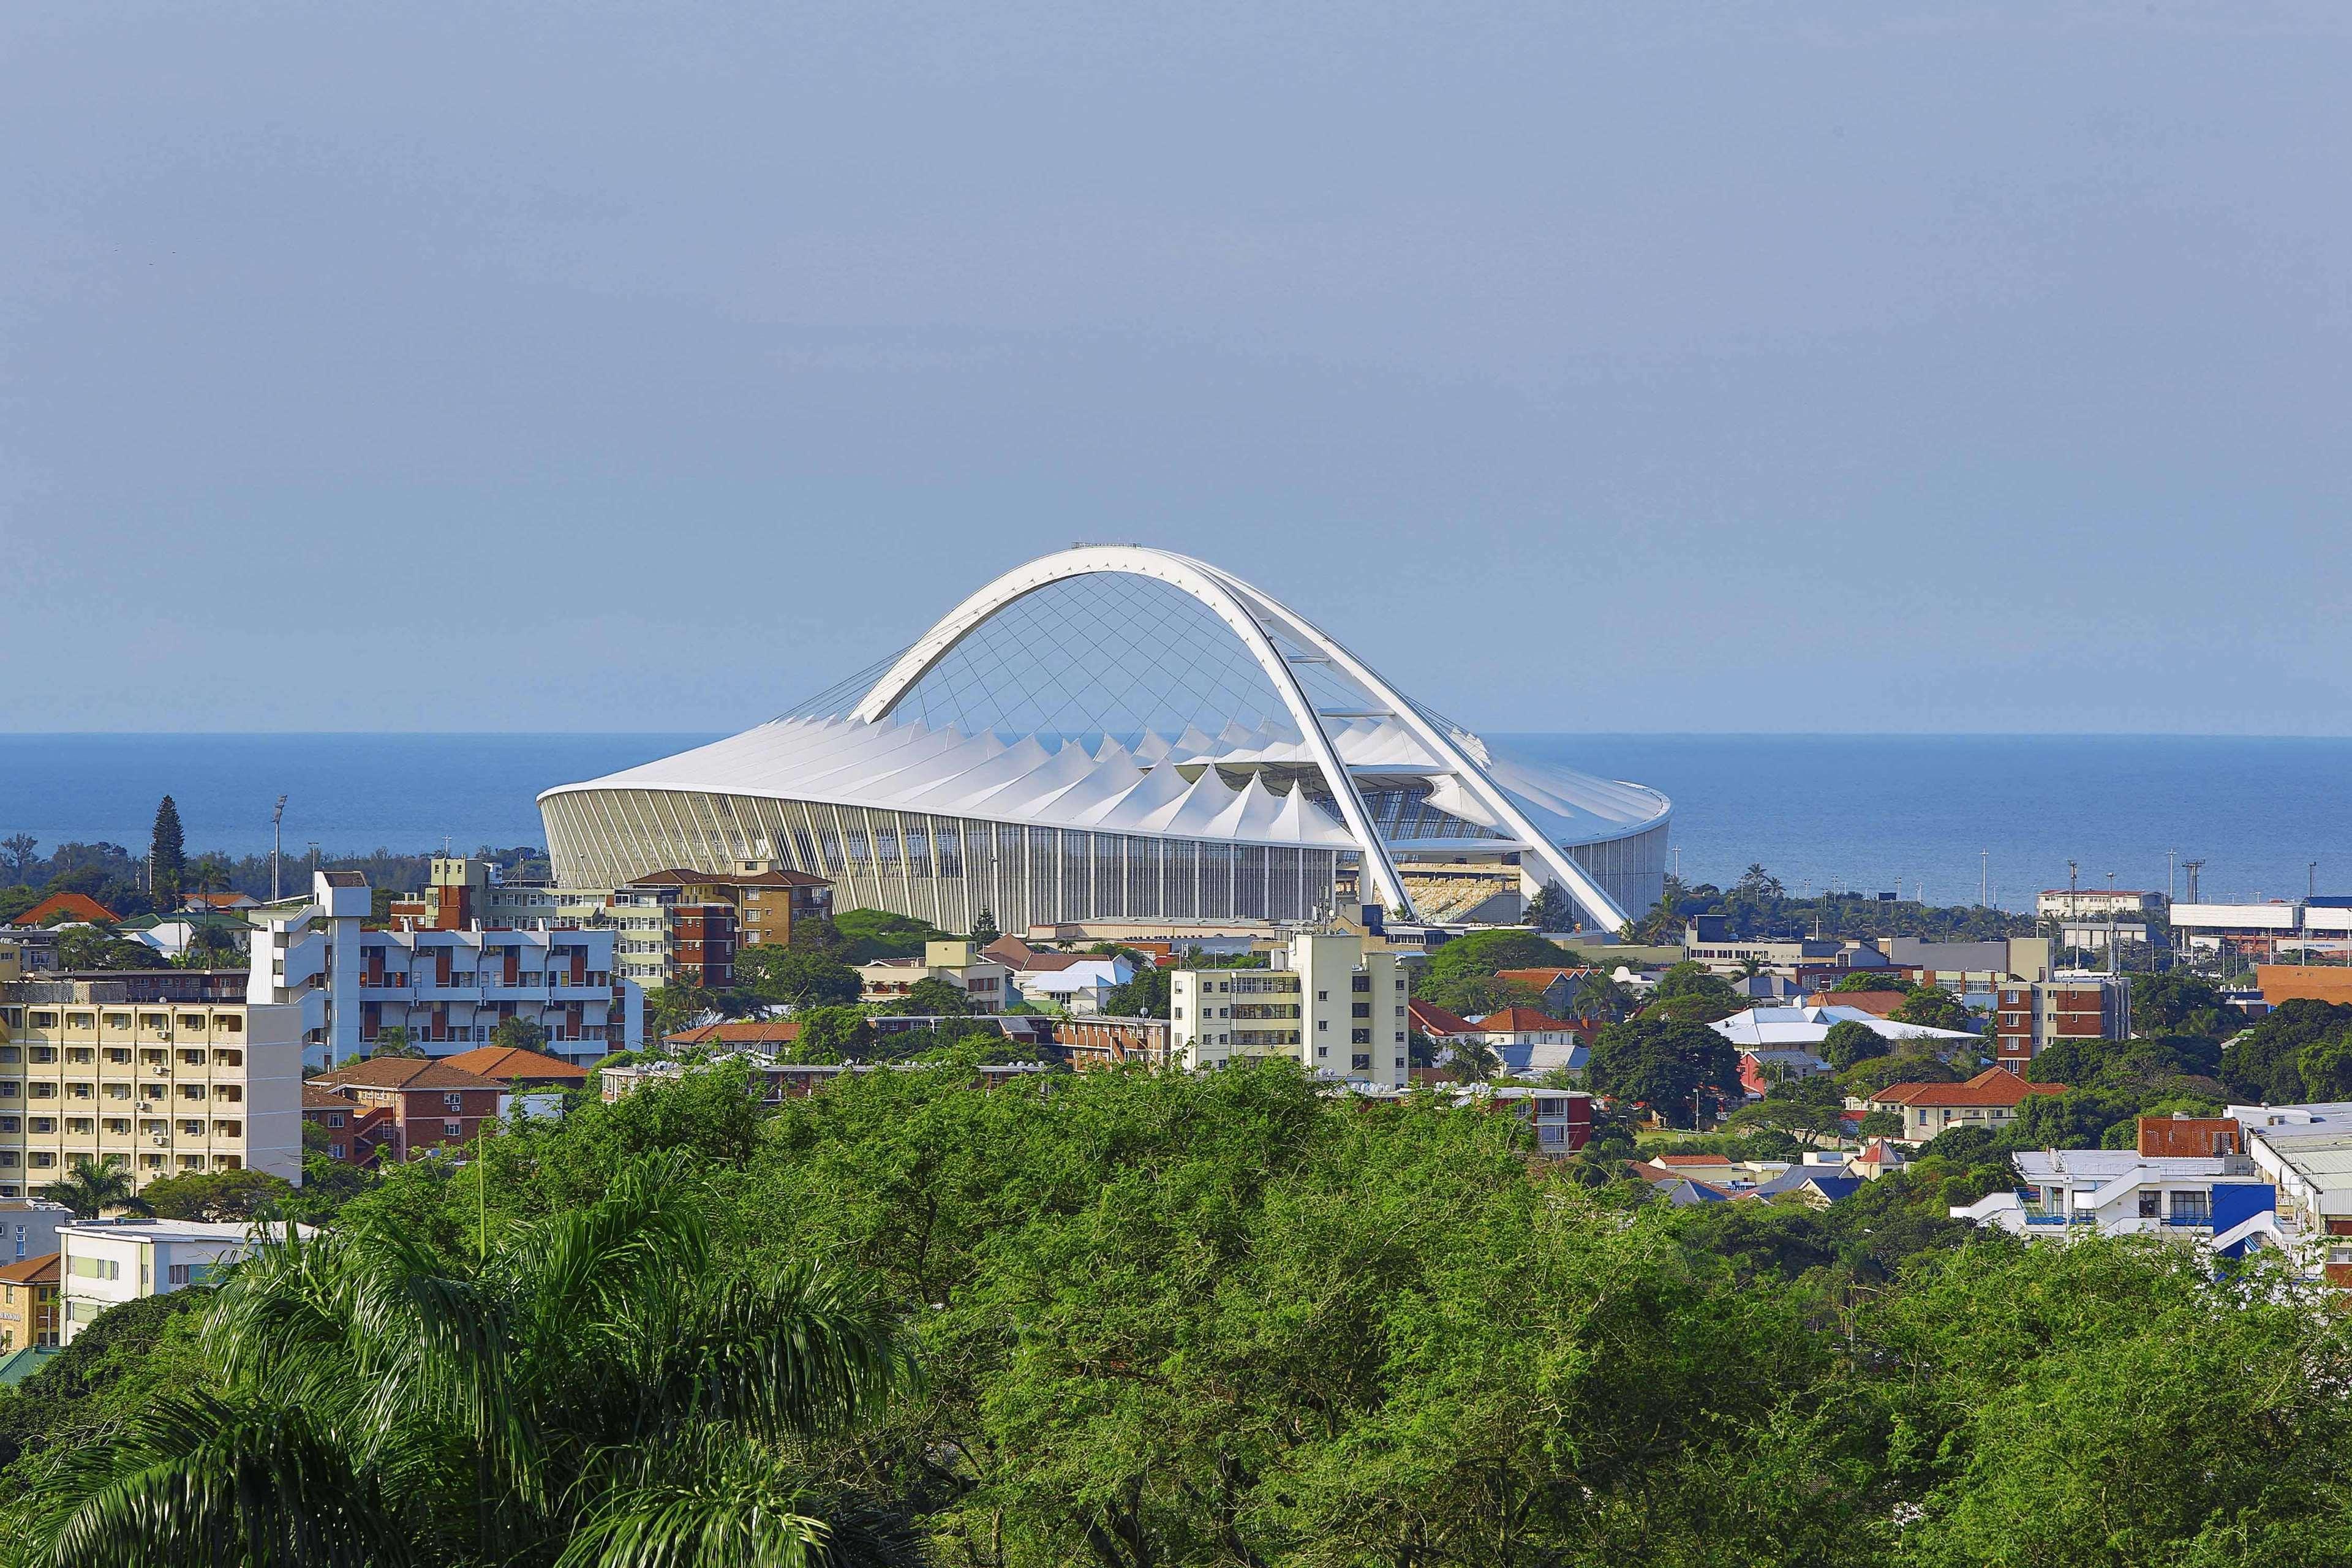 Hilton Durban Hotel Exterior photo